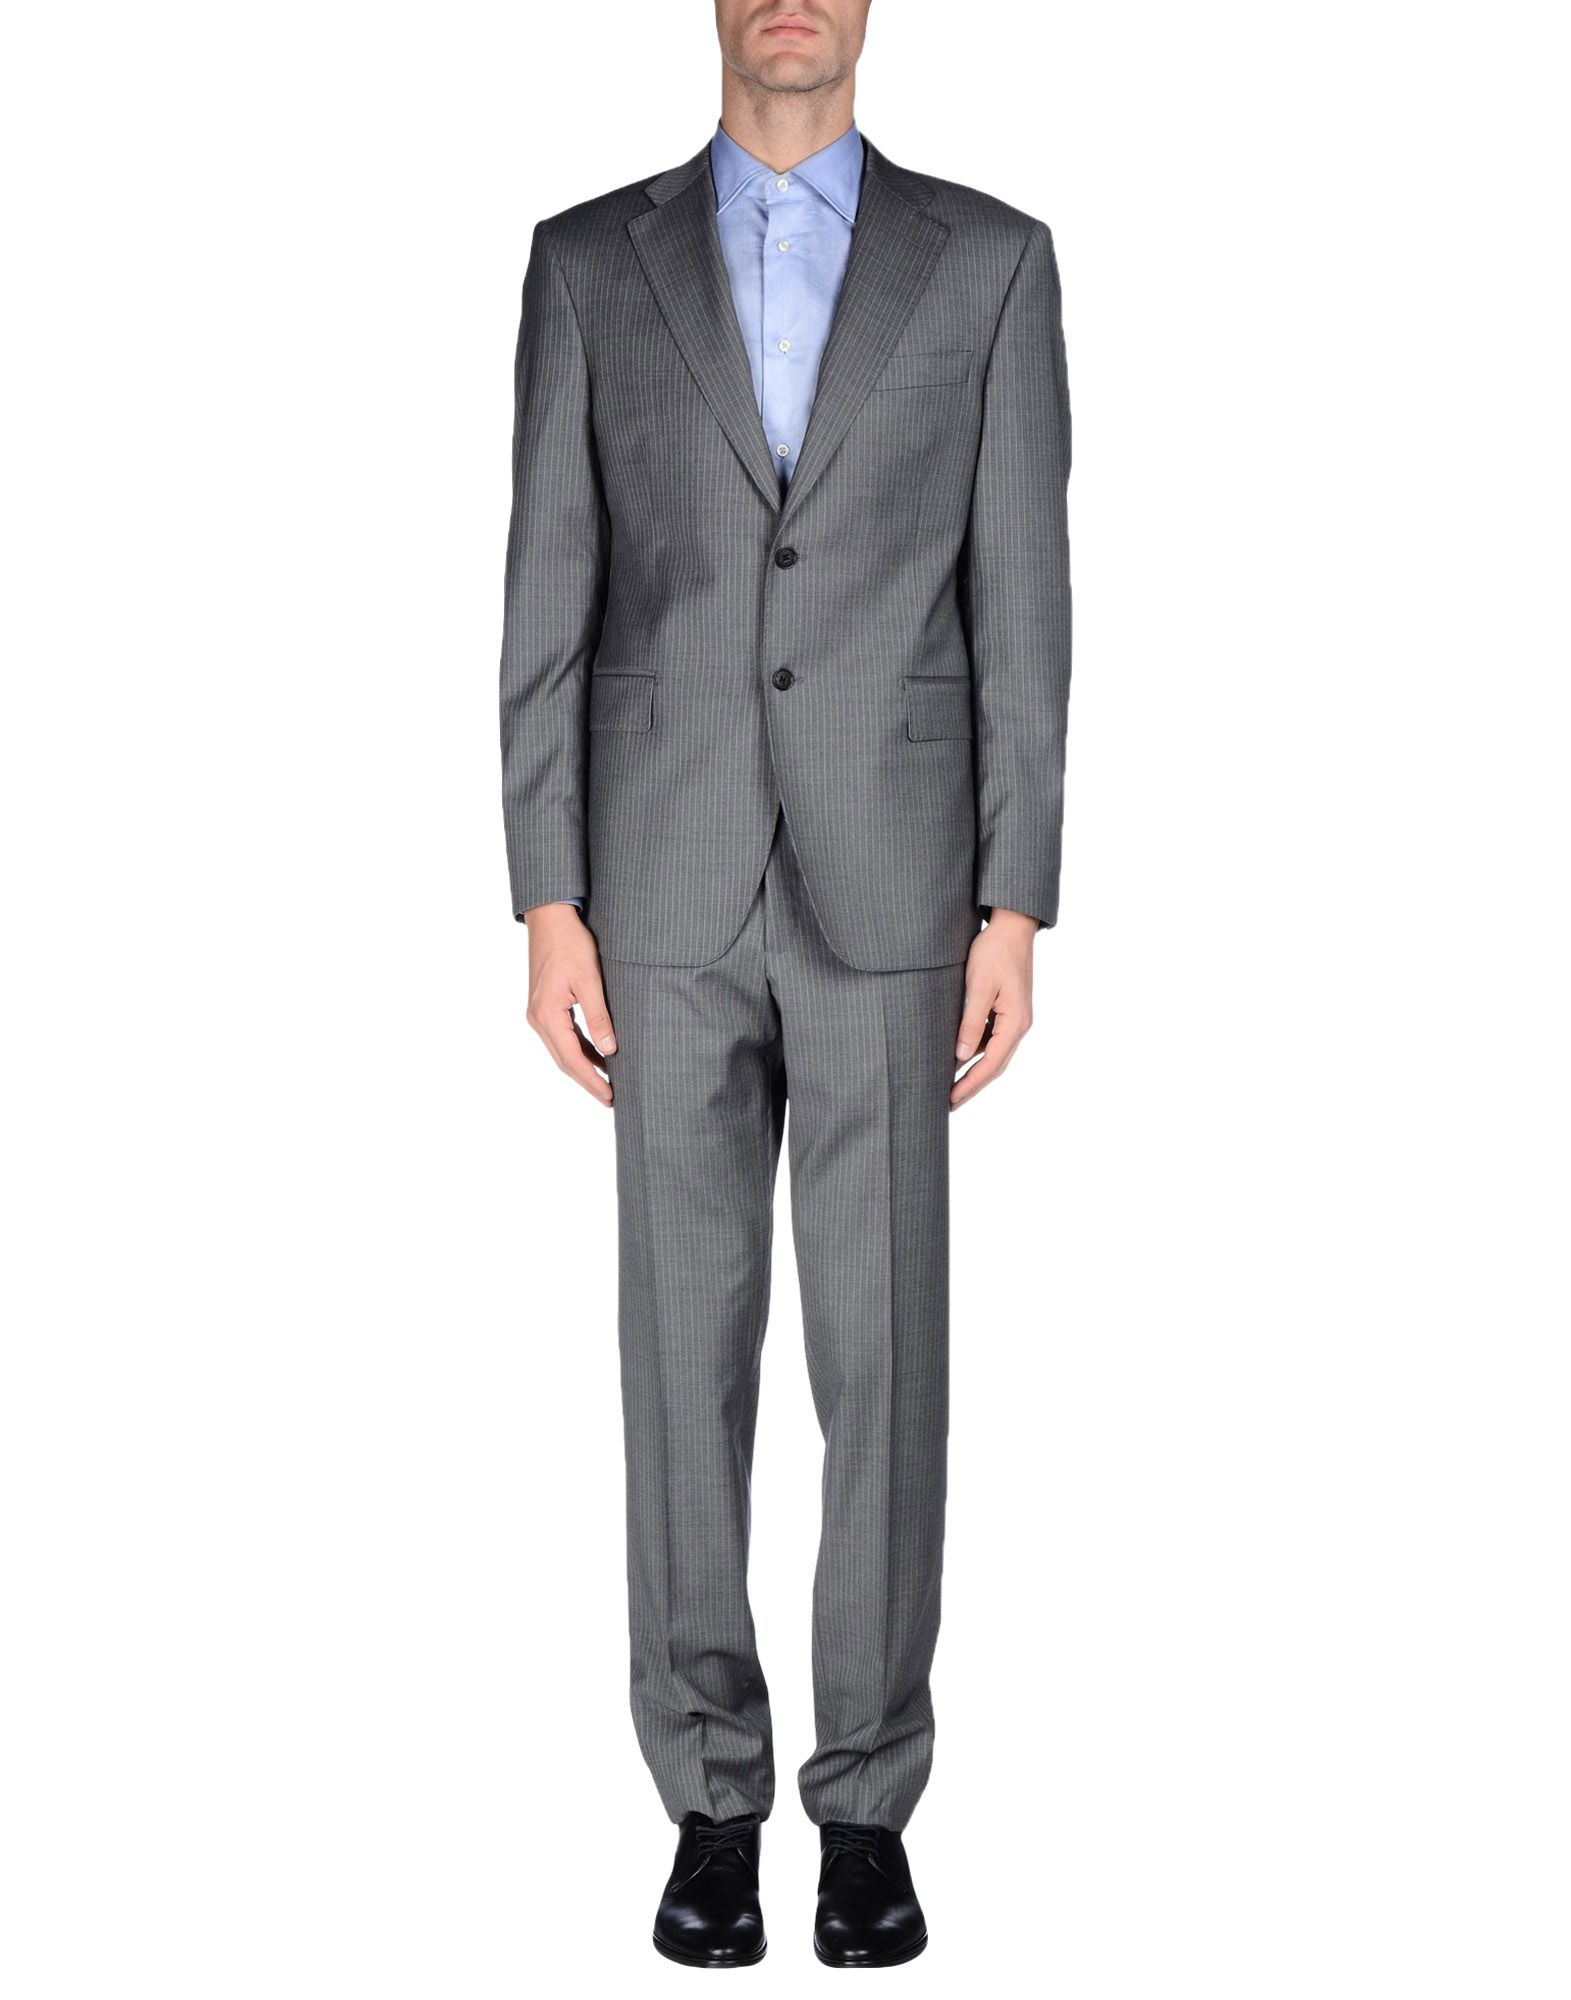 Lyst - Balmain Suit in Gray for Men